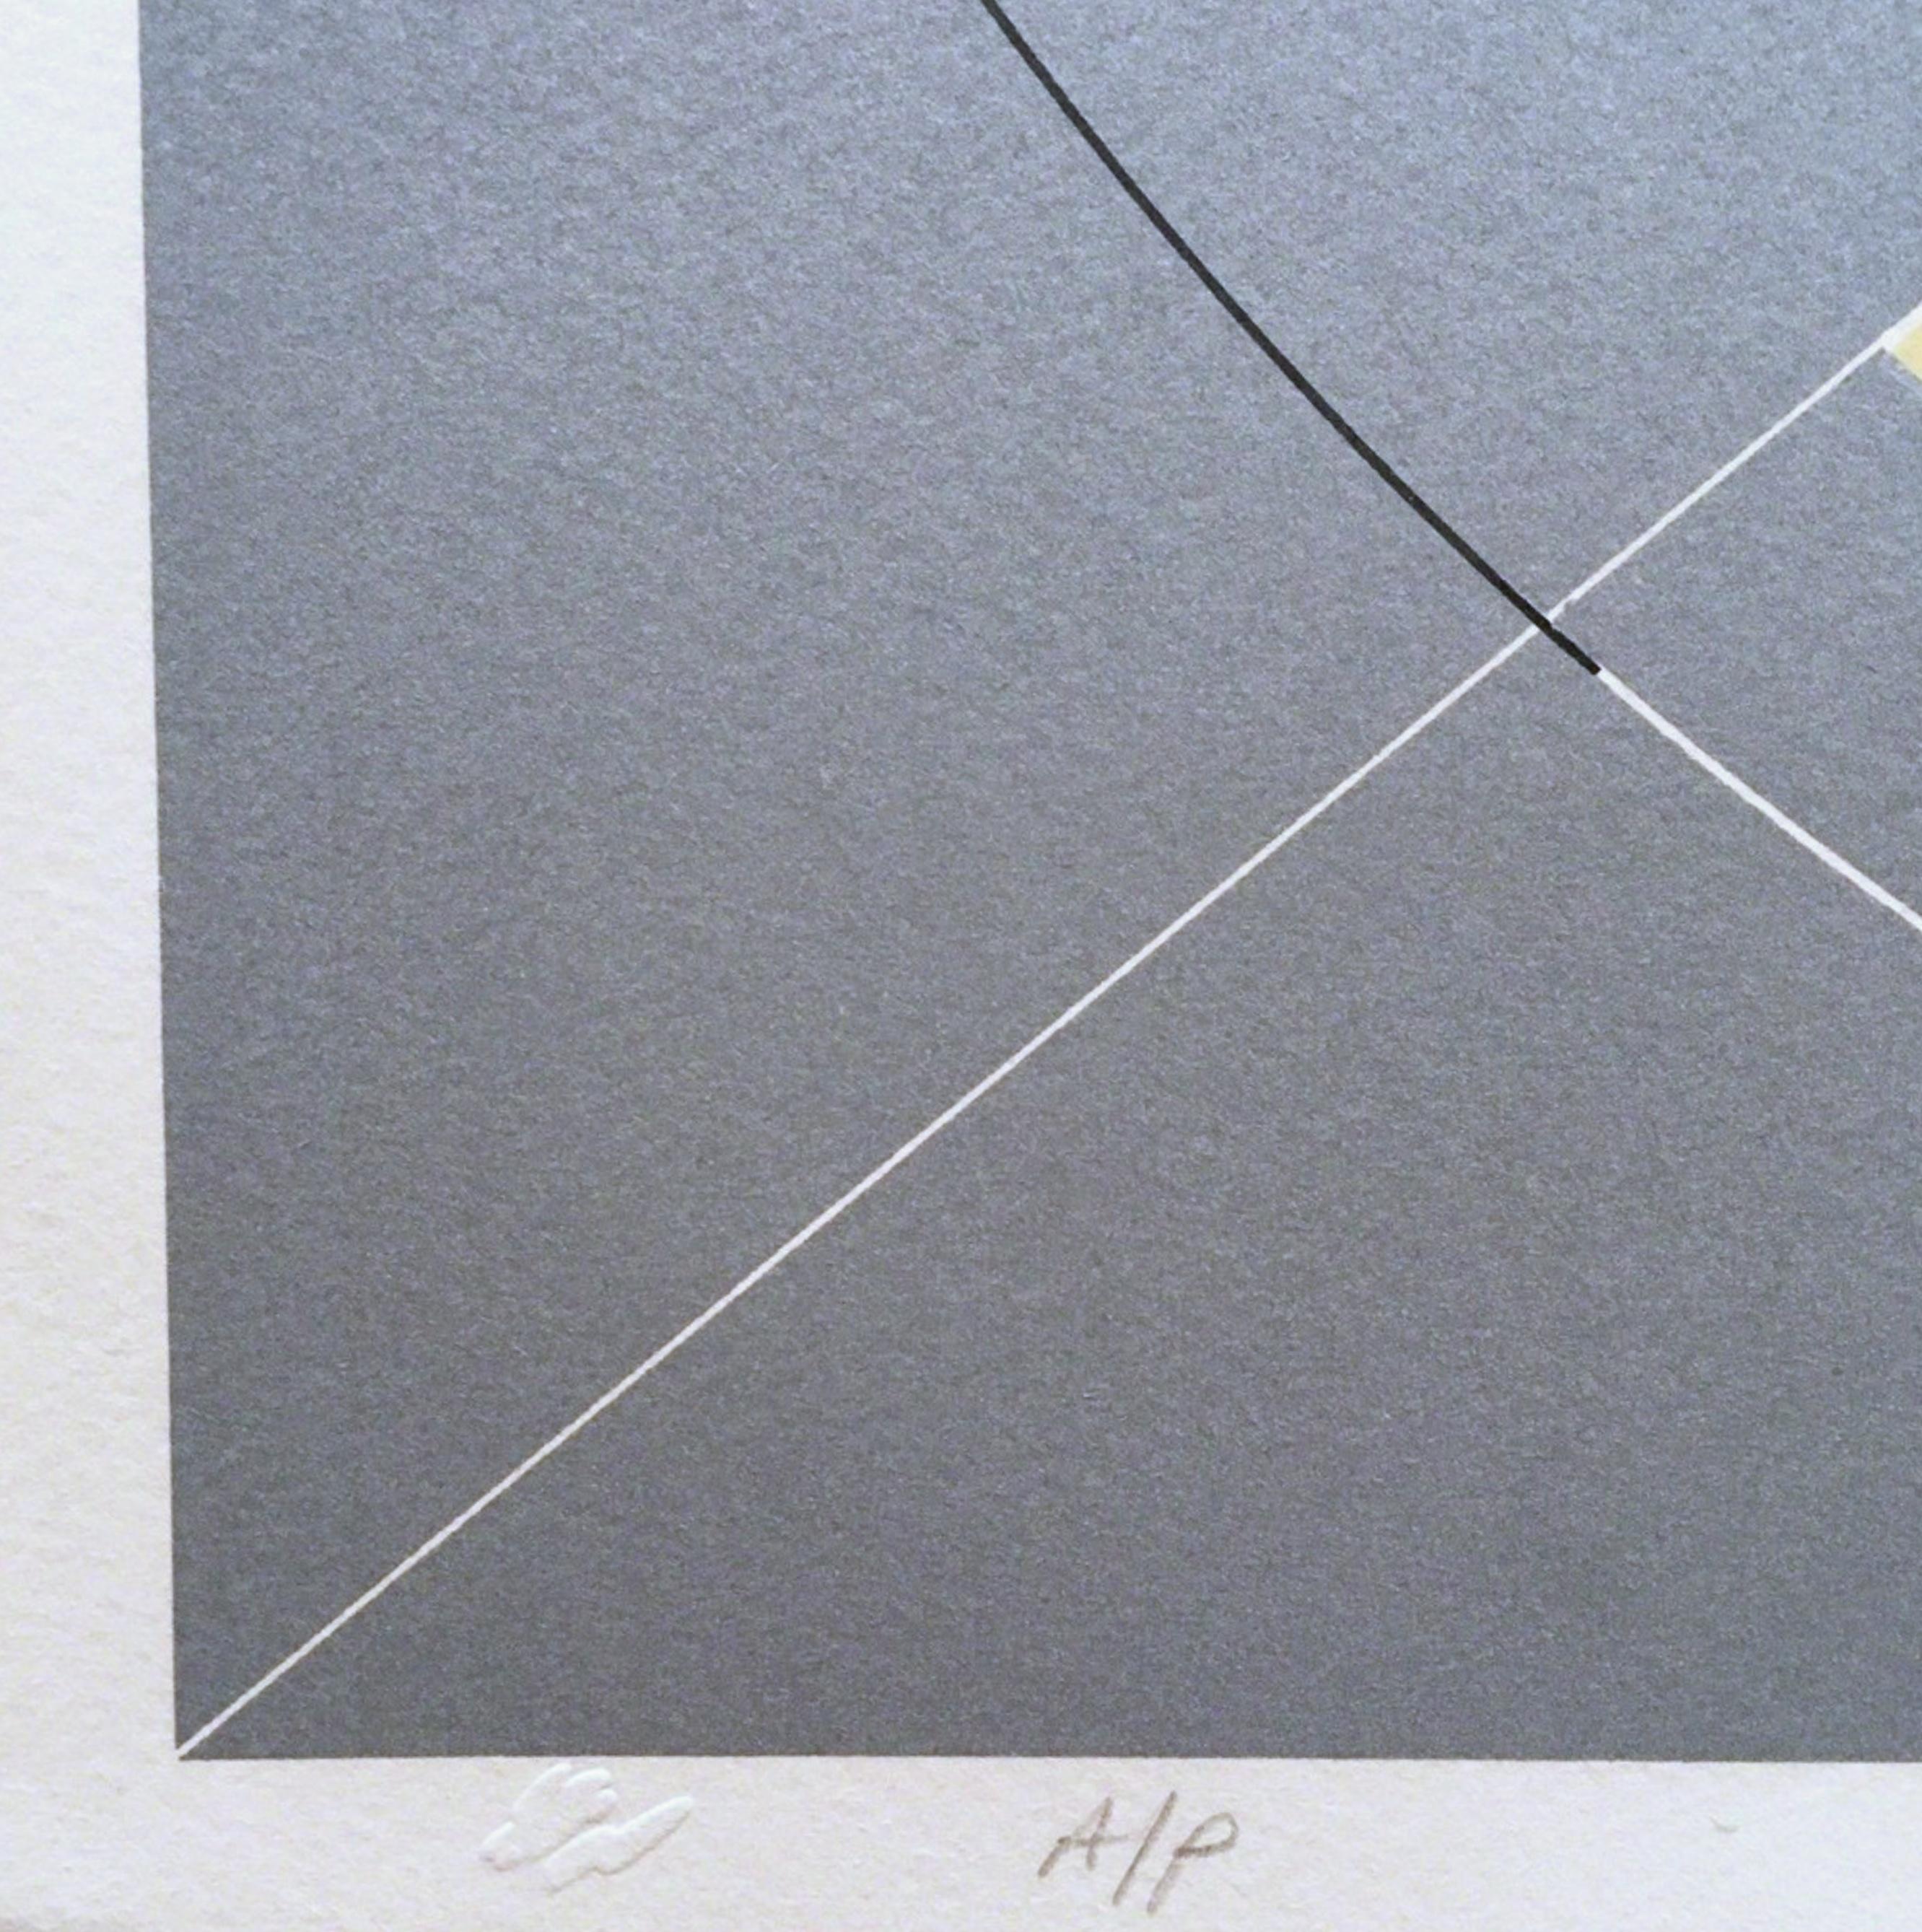 Tony Delap
Florian, Kind der Luft, 1977
Lithographie auf Arches Umschlagpapier
Mit Bleistift signiert, betitelt, mit Anmerkungen versehen und datiert auf der Vorderseite
Diese Lithografie, 